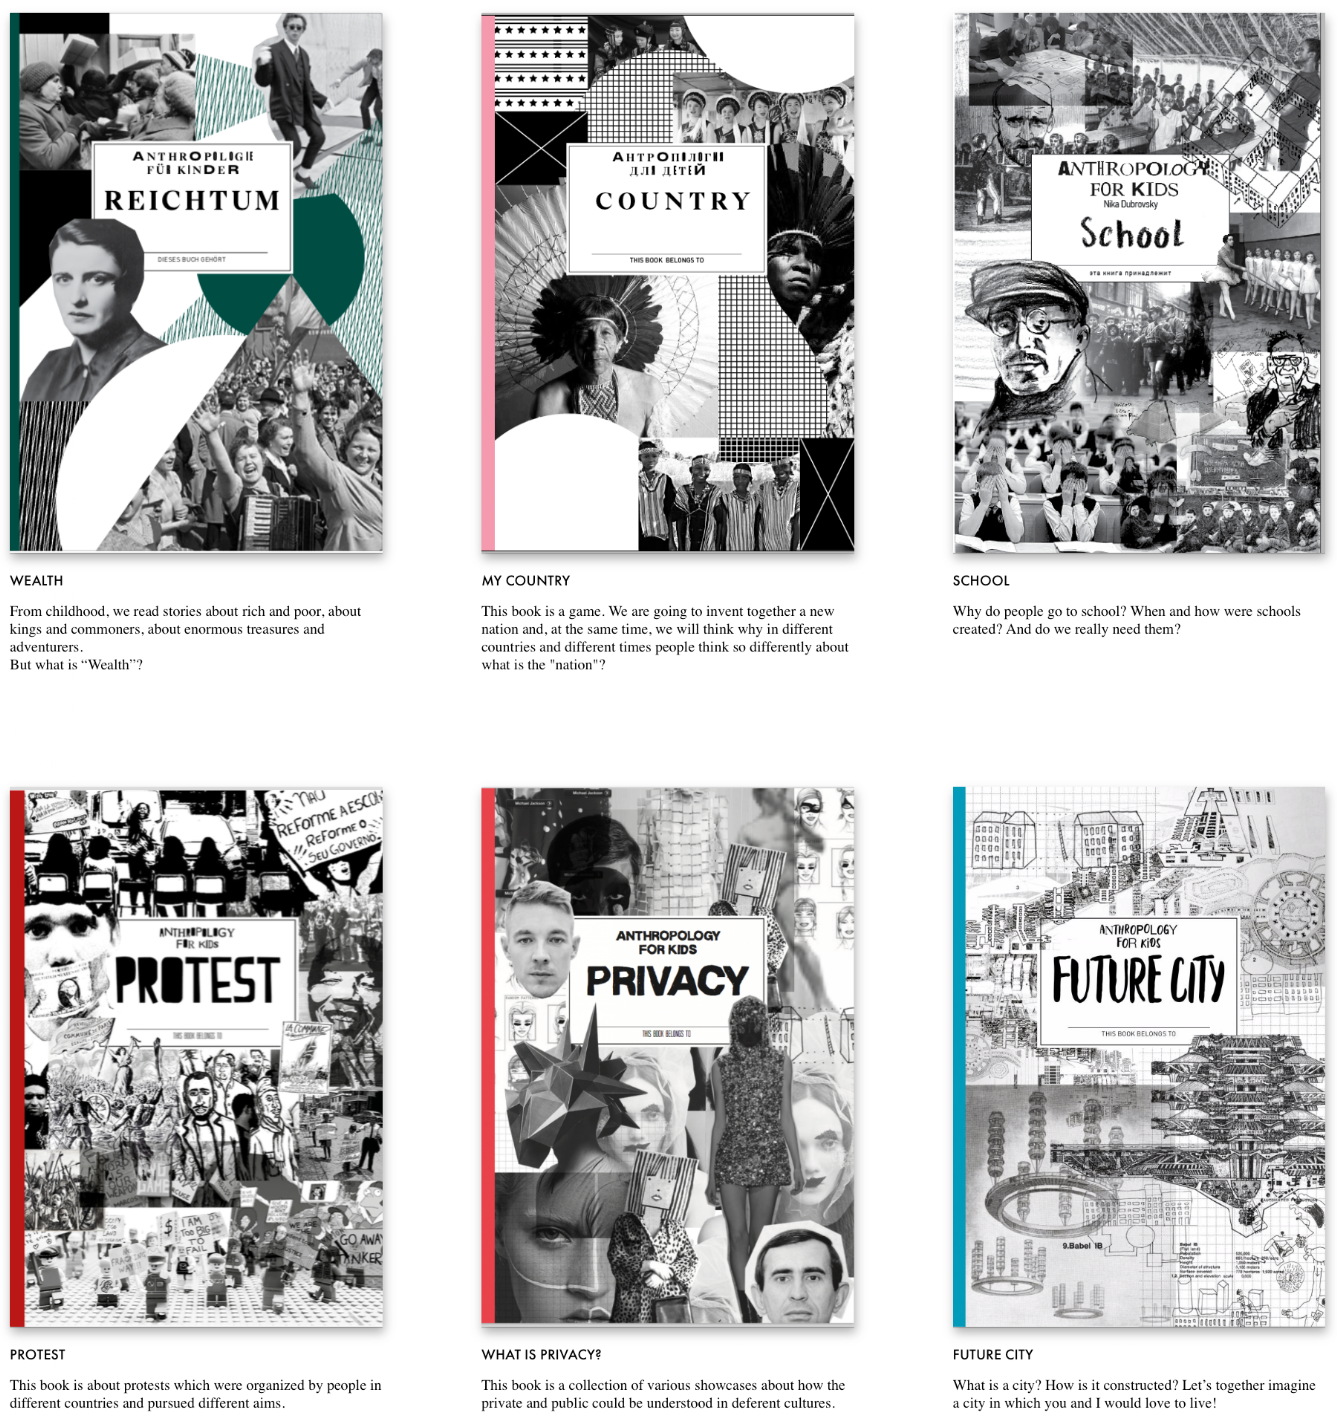 Sechs verschiedene Titelseiten mit unterschiedlichen Themen der Publikationen, die im Rahmen von "Anthropology for Kids" entstanden sind